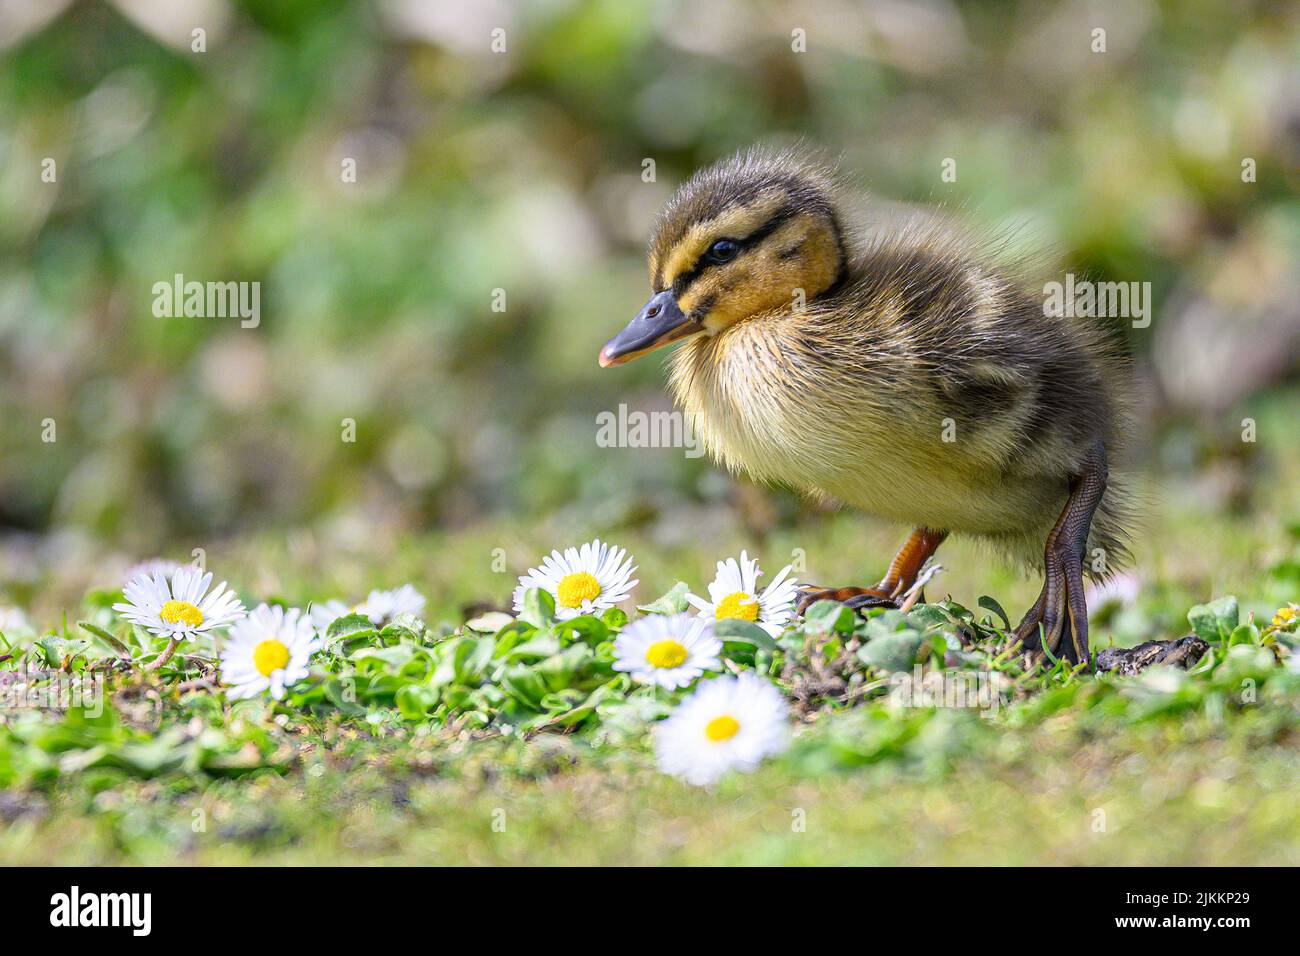 Nahaufnahme einer kleinen Ente auf dem Boden in der Nähe kleiner Kamillenblüten auf einem verschwommenen Hintergrund Stockfoto